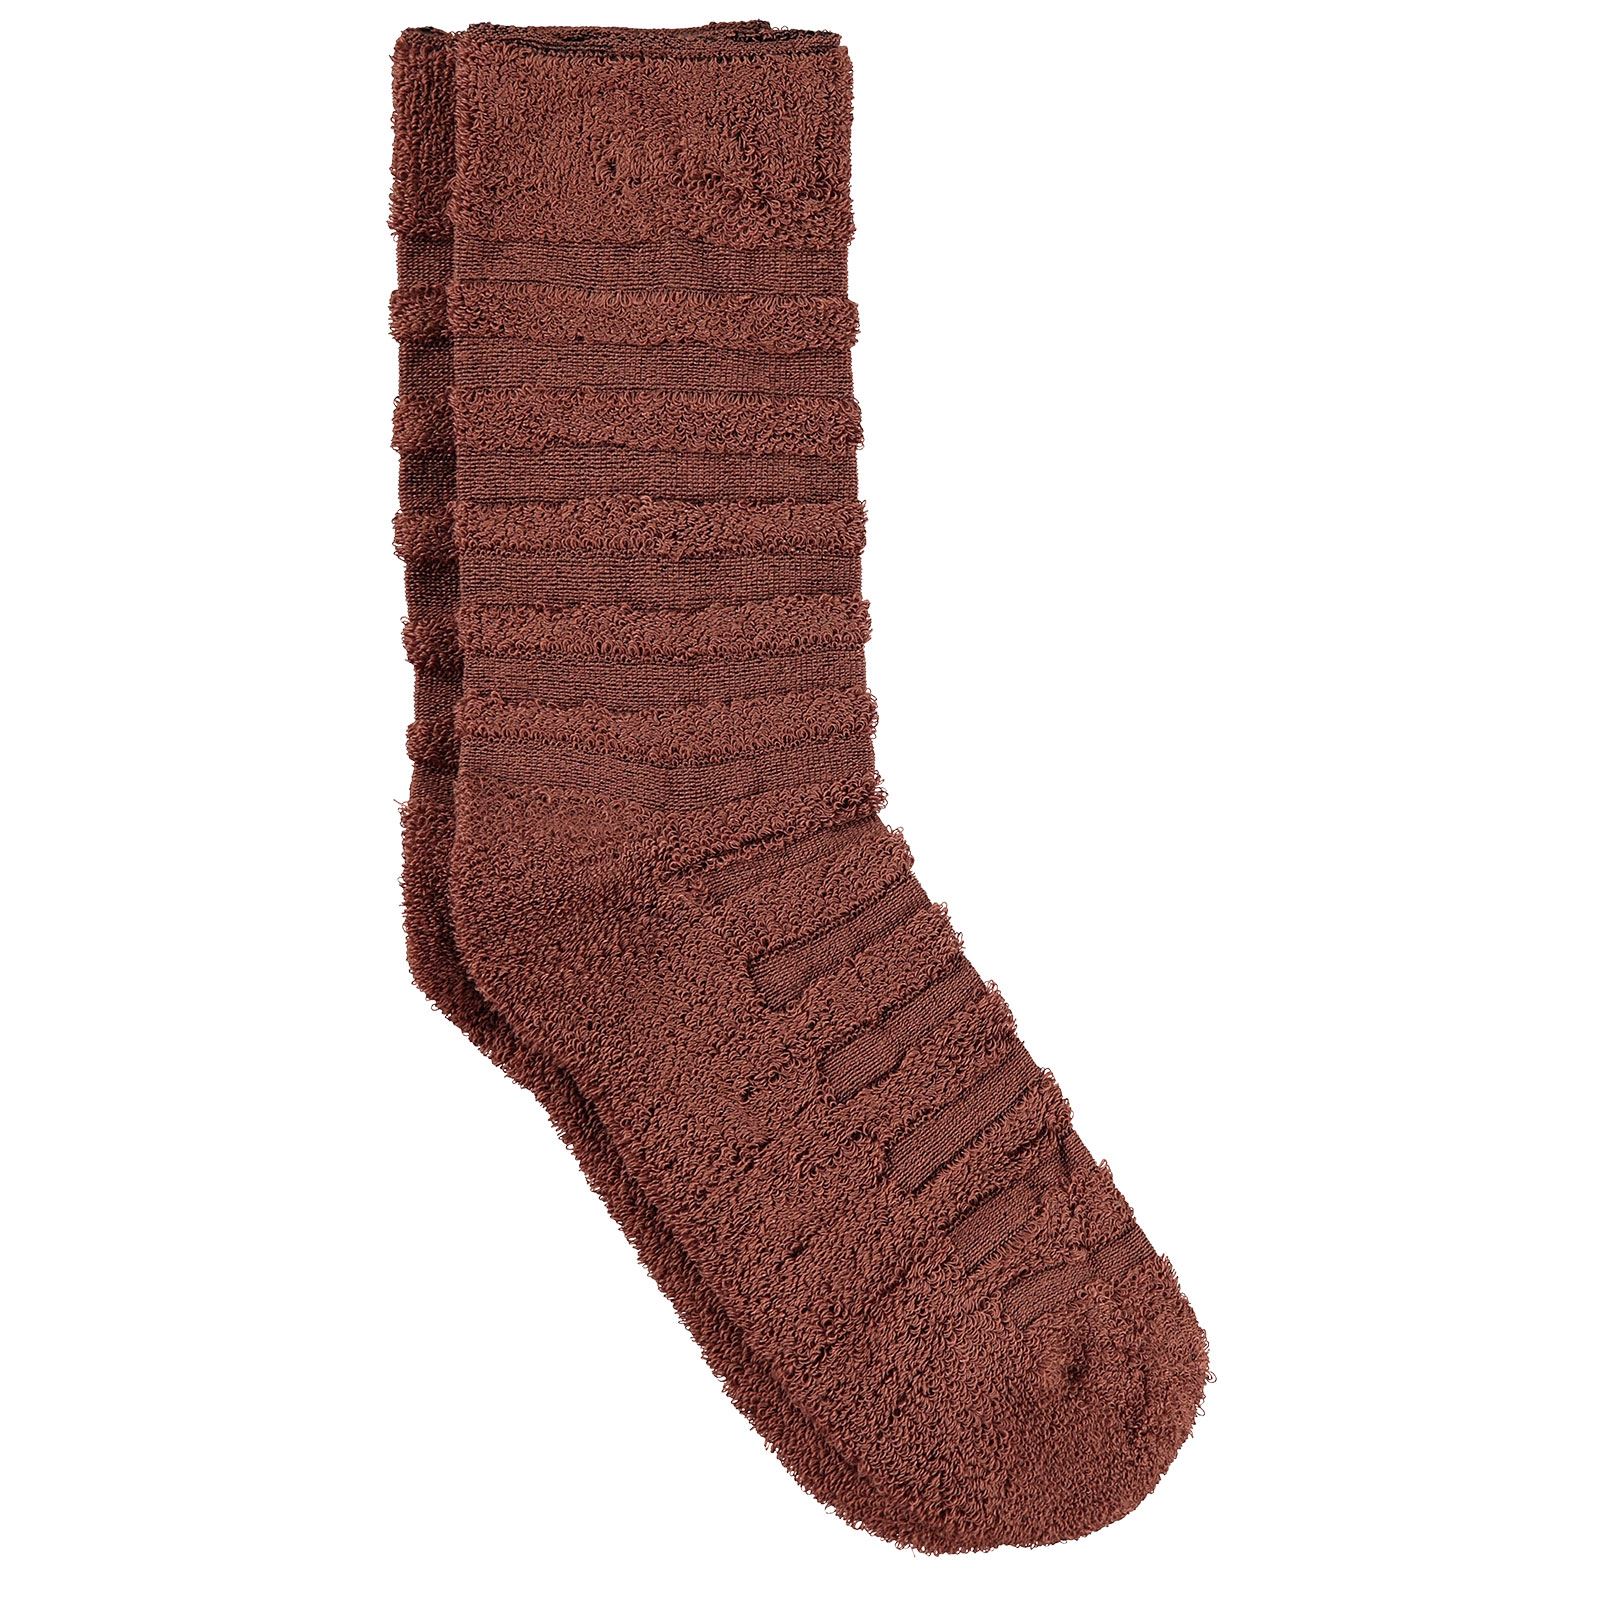 Bella Calze Kız Çocuk Ters Havlu Soket Çorap 36-40 Numara Kahverengi